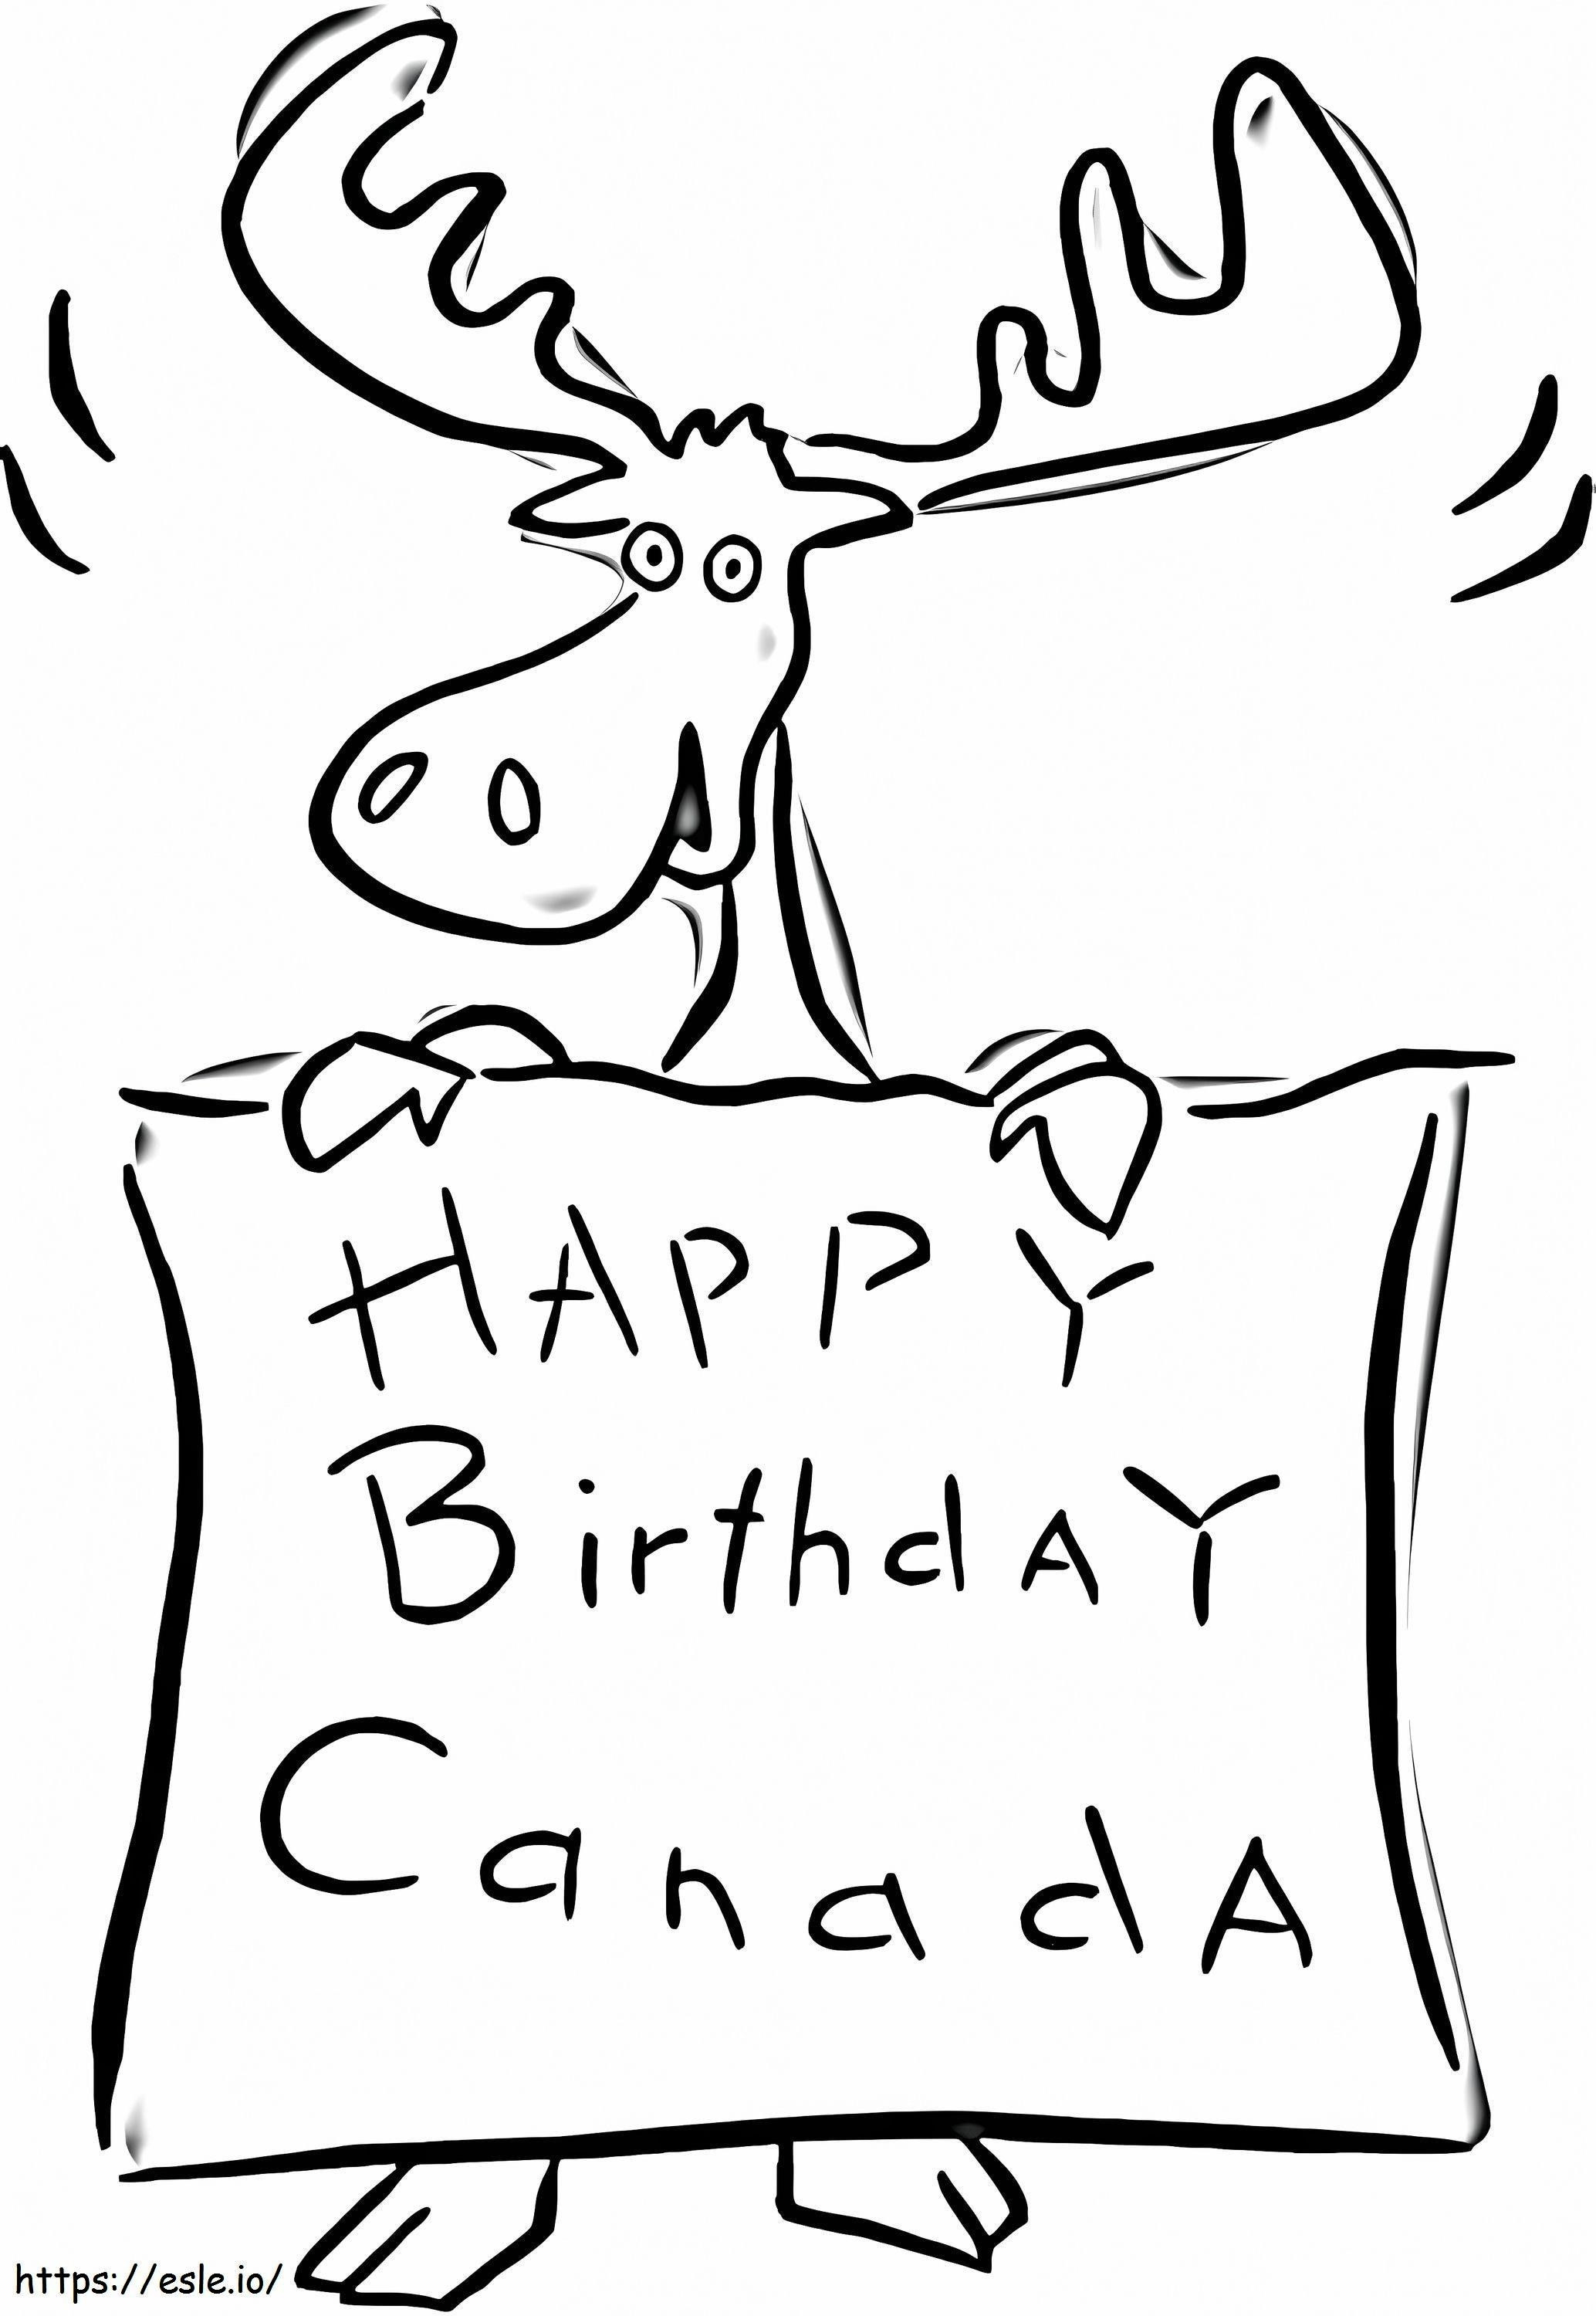 Alles Gute zum Geburtstag Kanada ausmalbilder